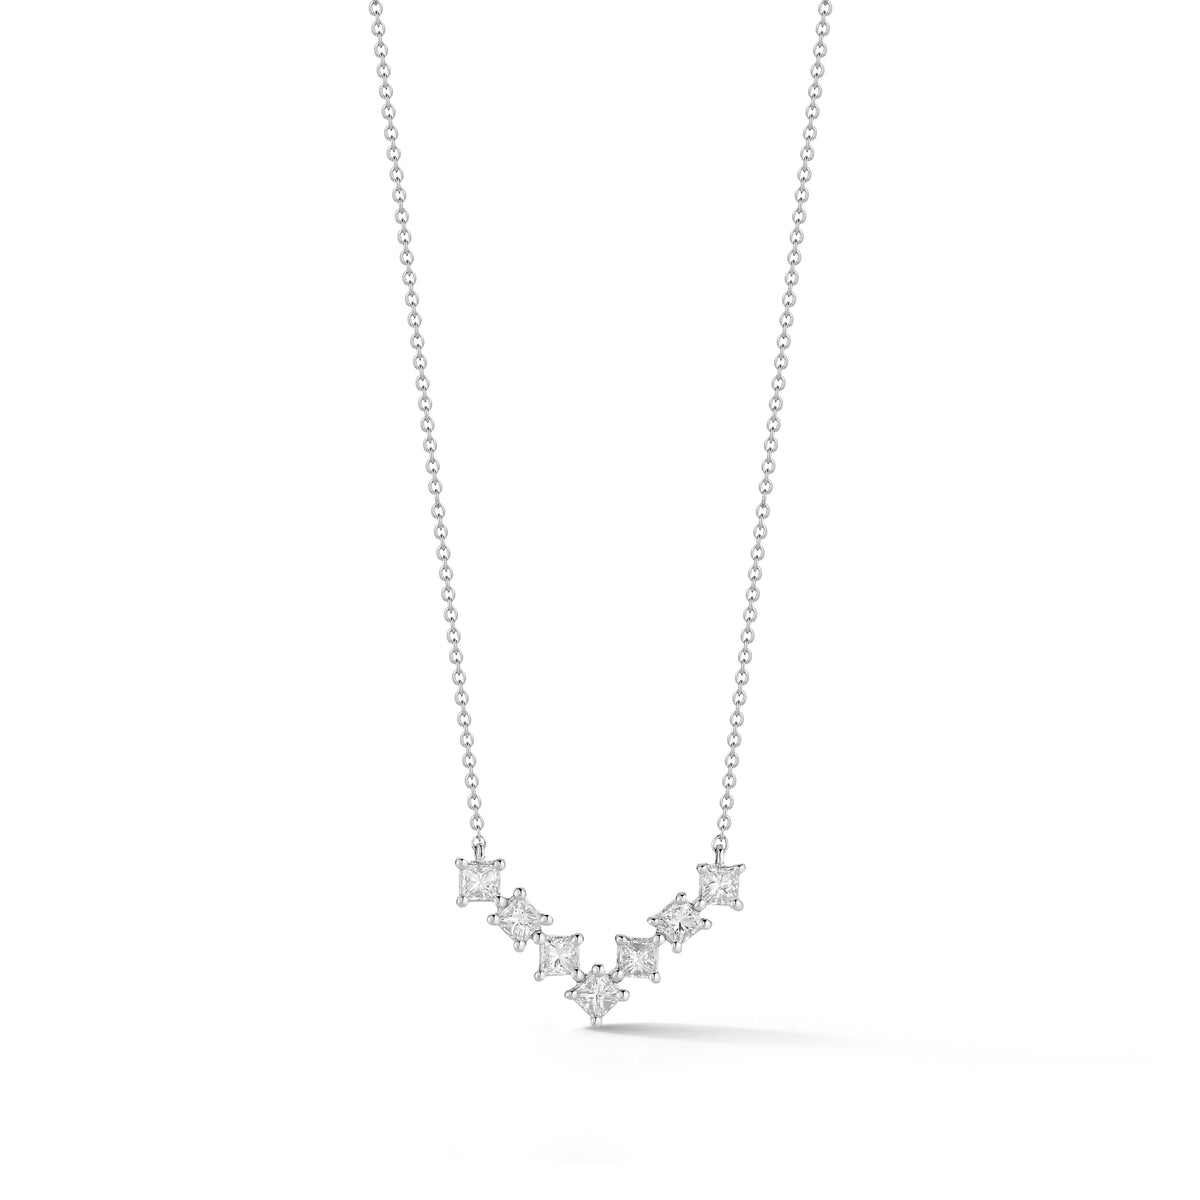 14K White Gold Diamond "V" Shaped Necklace